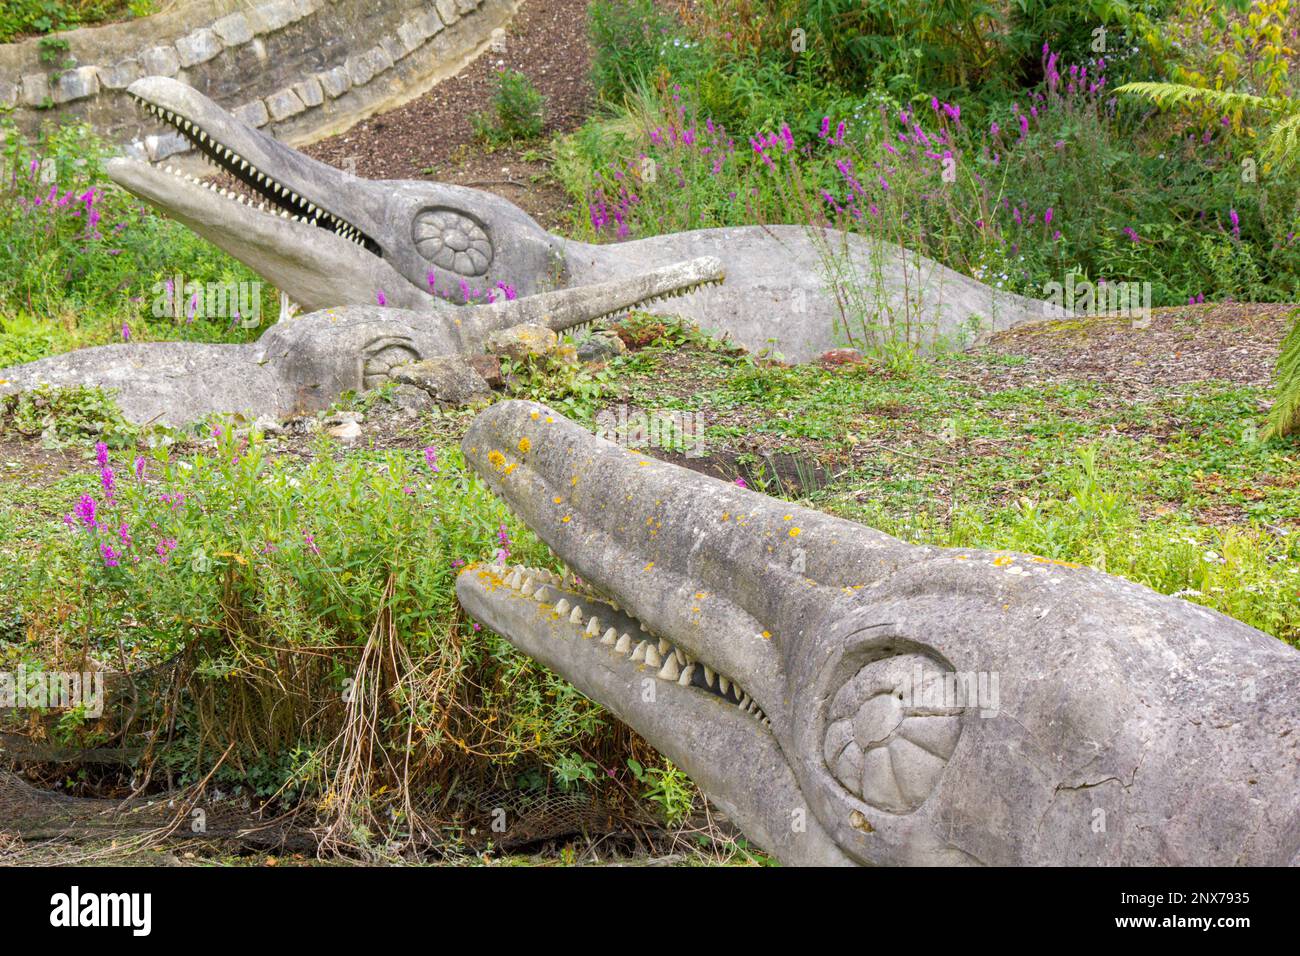 Modèles de dinosaures d'ichtyosaurus au parc Crystal Palace. Les premières sculptures de dinosaures au monde. Entièrement restauré en 2002 et classé Grade 1. Banque D'Images